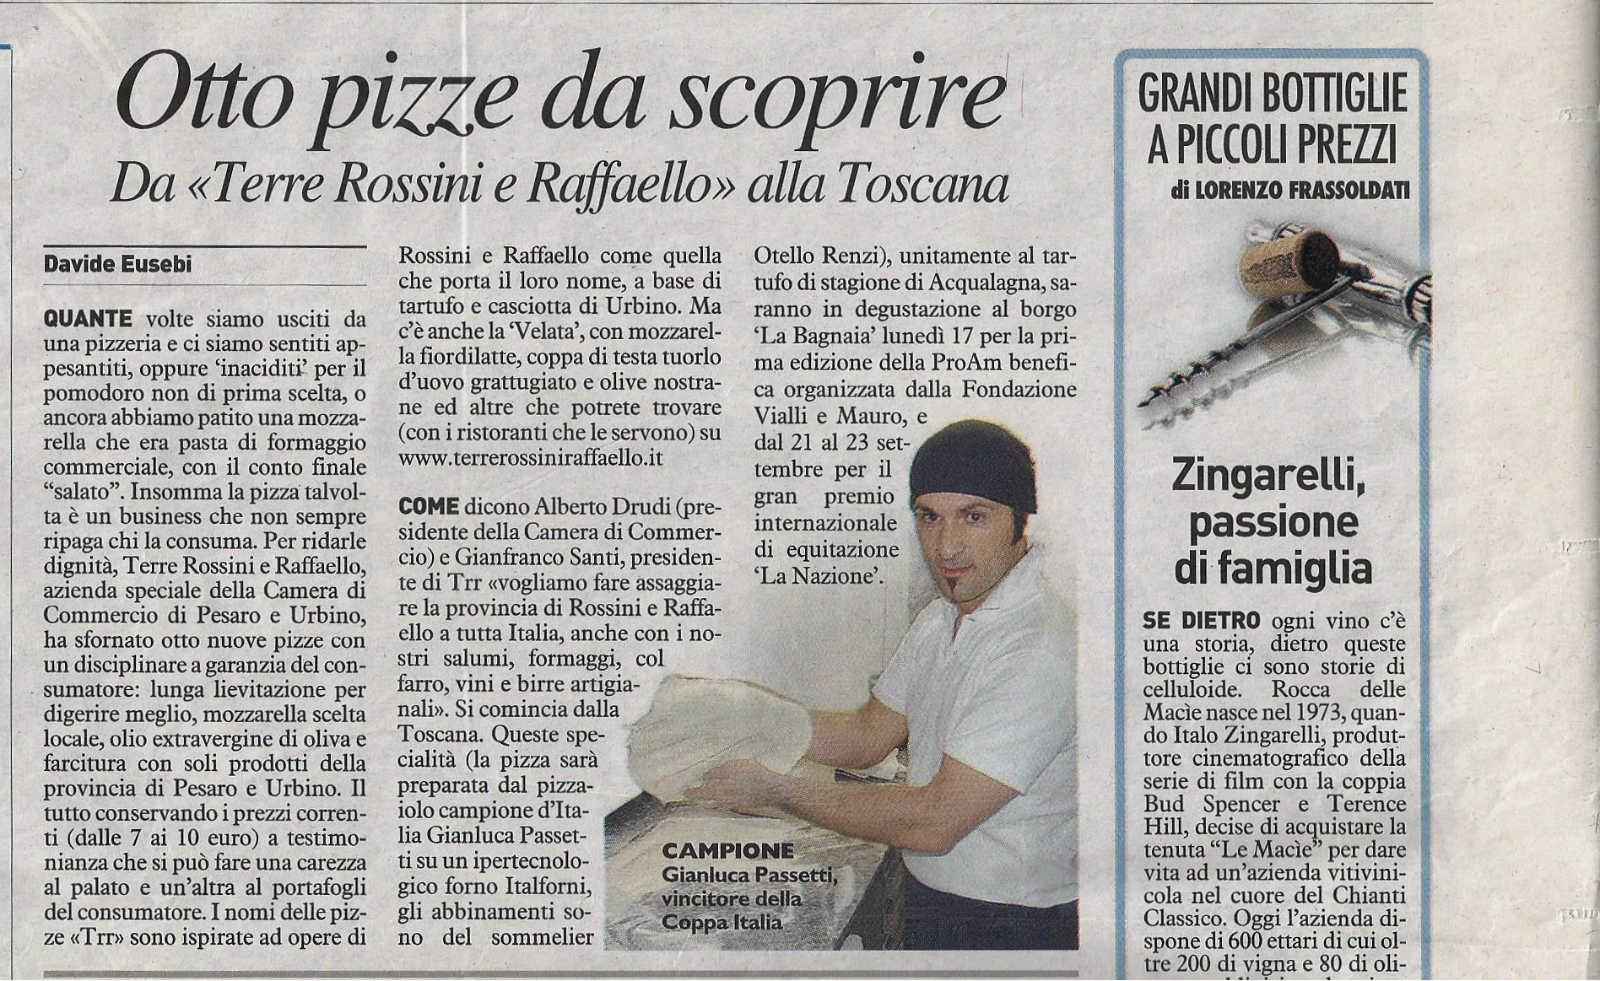 Otto pizze da scoprire. Da “Terre Rossini e Raffaello” alla Toscana.